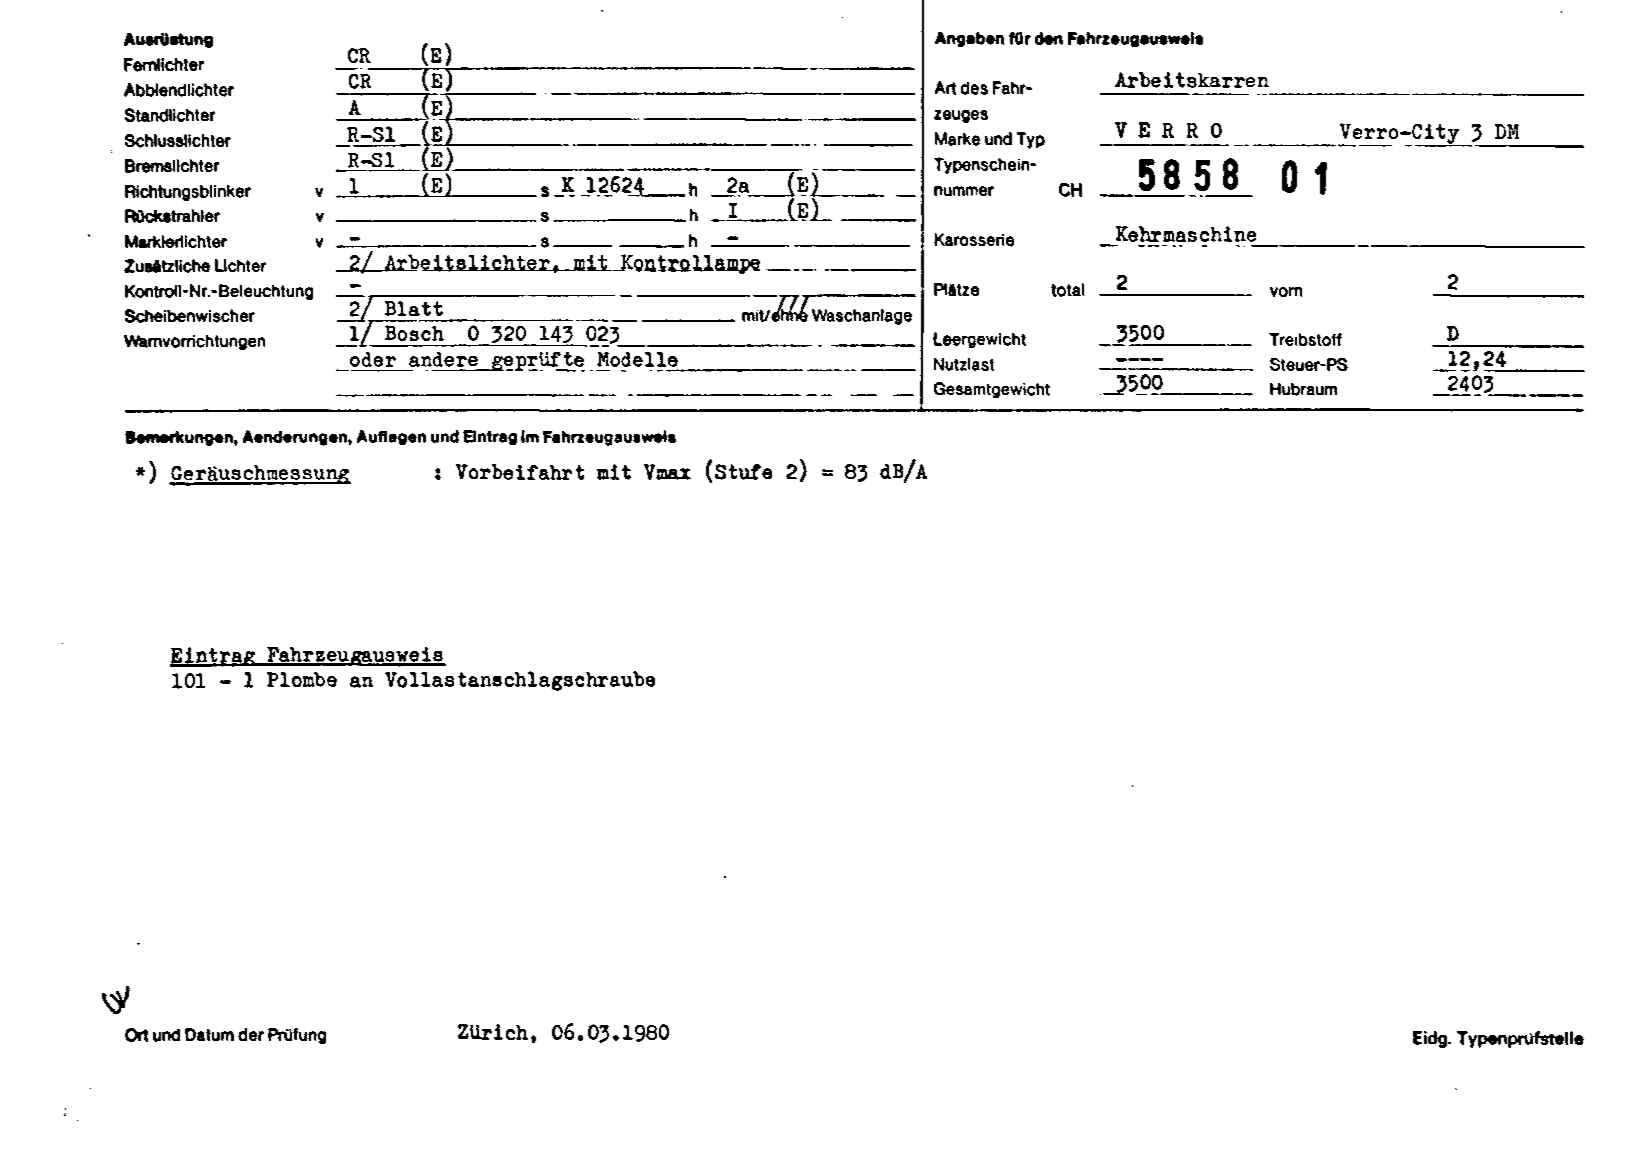 Schweizer Typenschein 585801 Deutsch Seite 2 (TG.DE.585801.2.png)